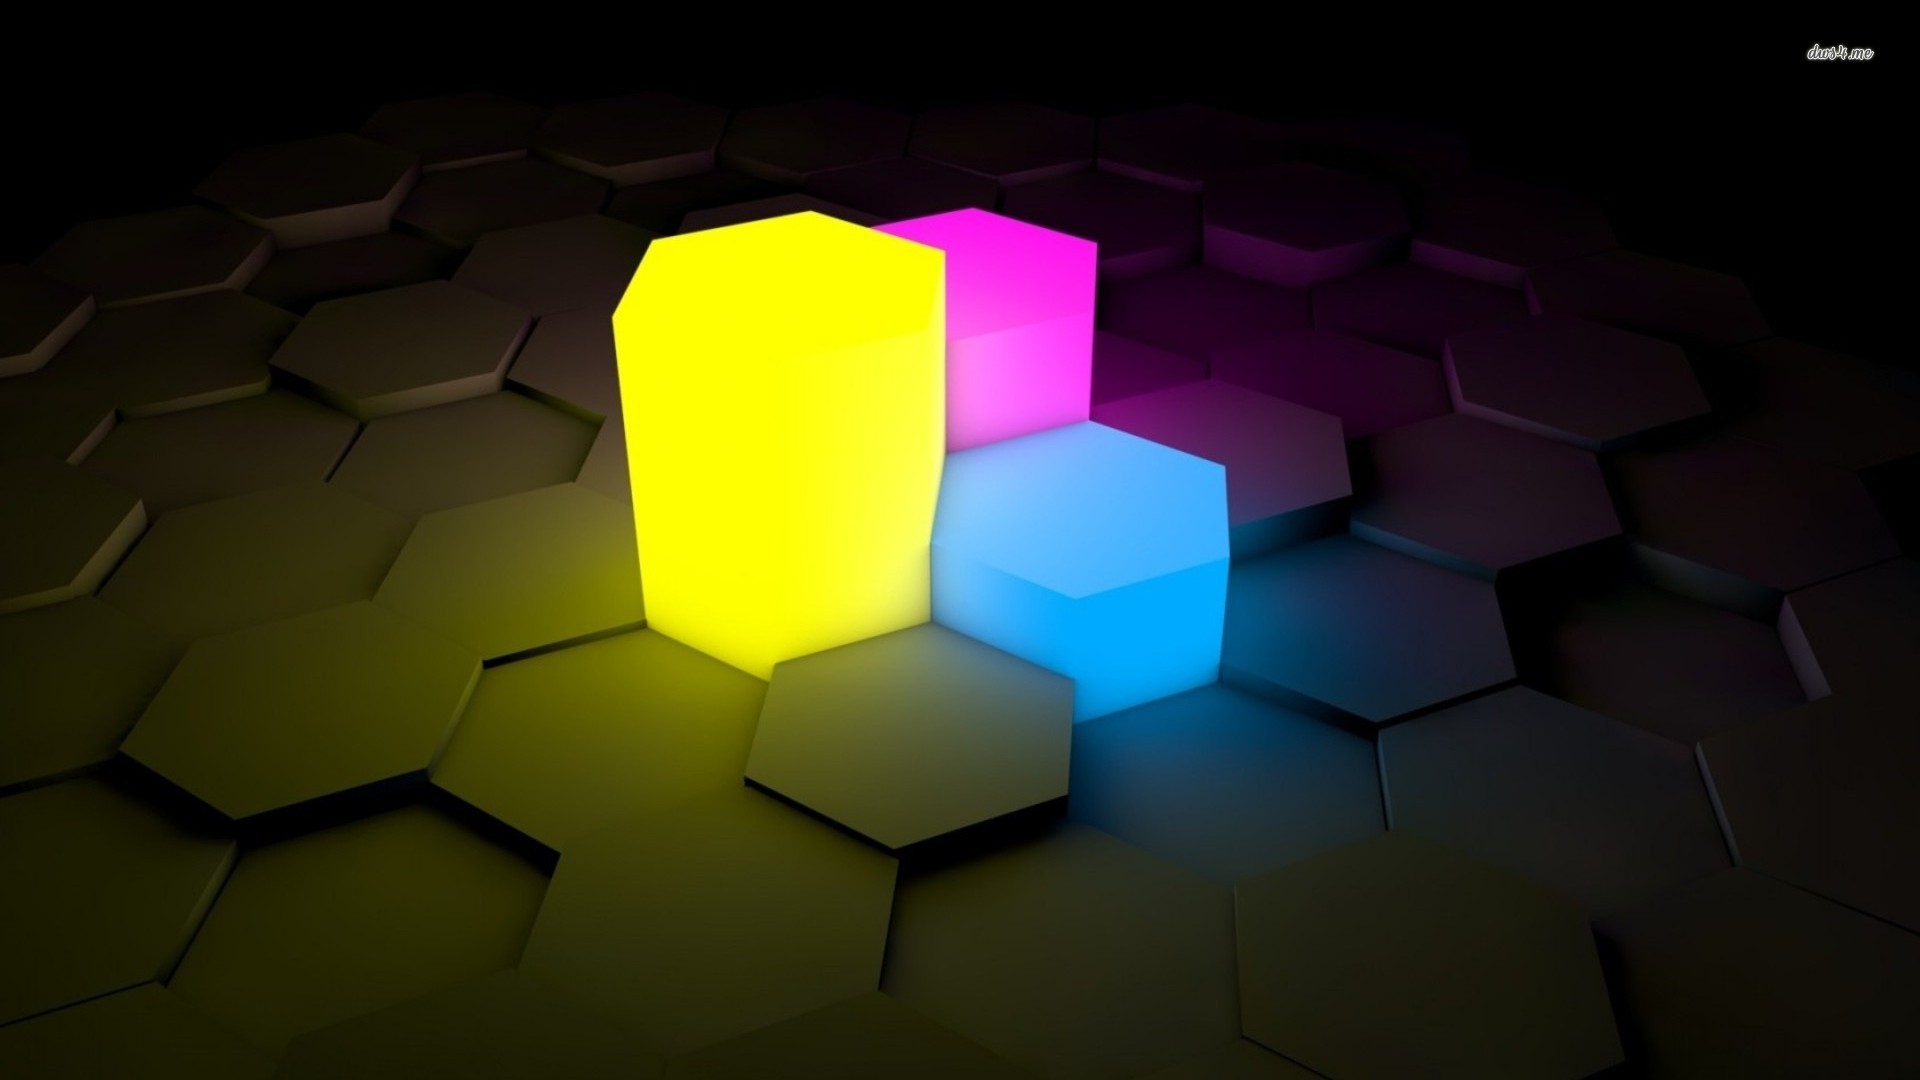 Your Wallpaper Neon Hexagonal Prism 3d Jpg